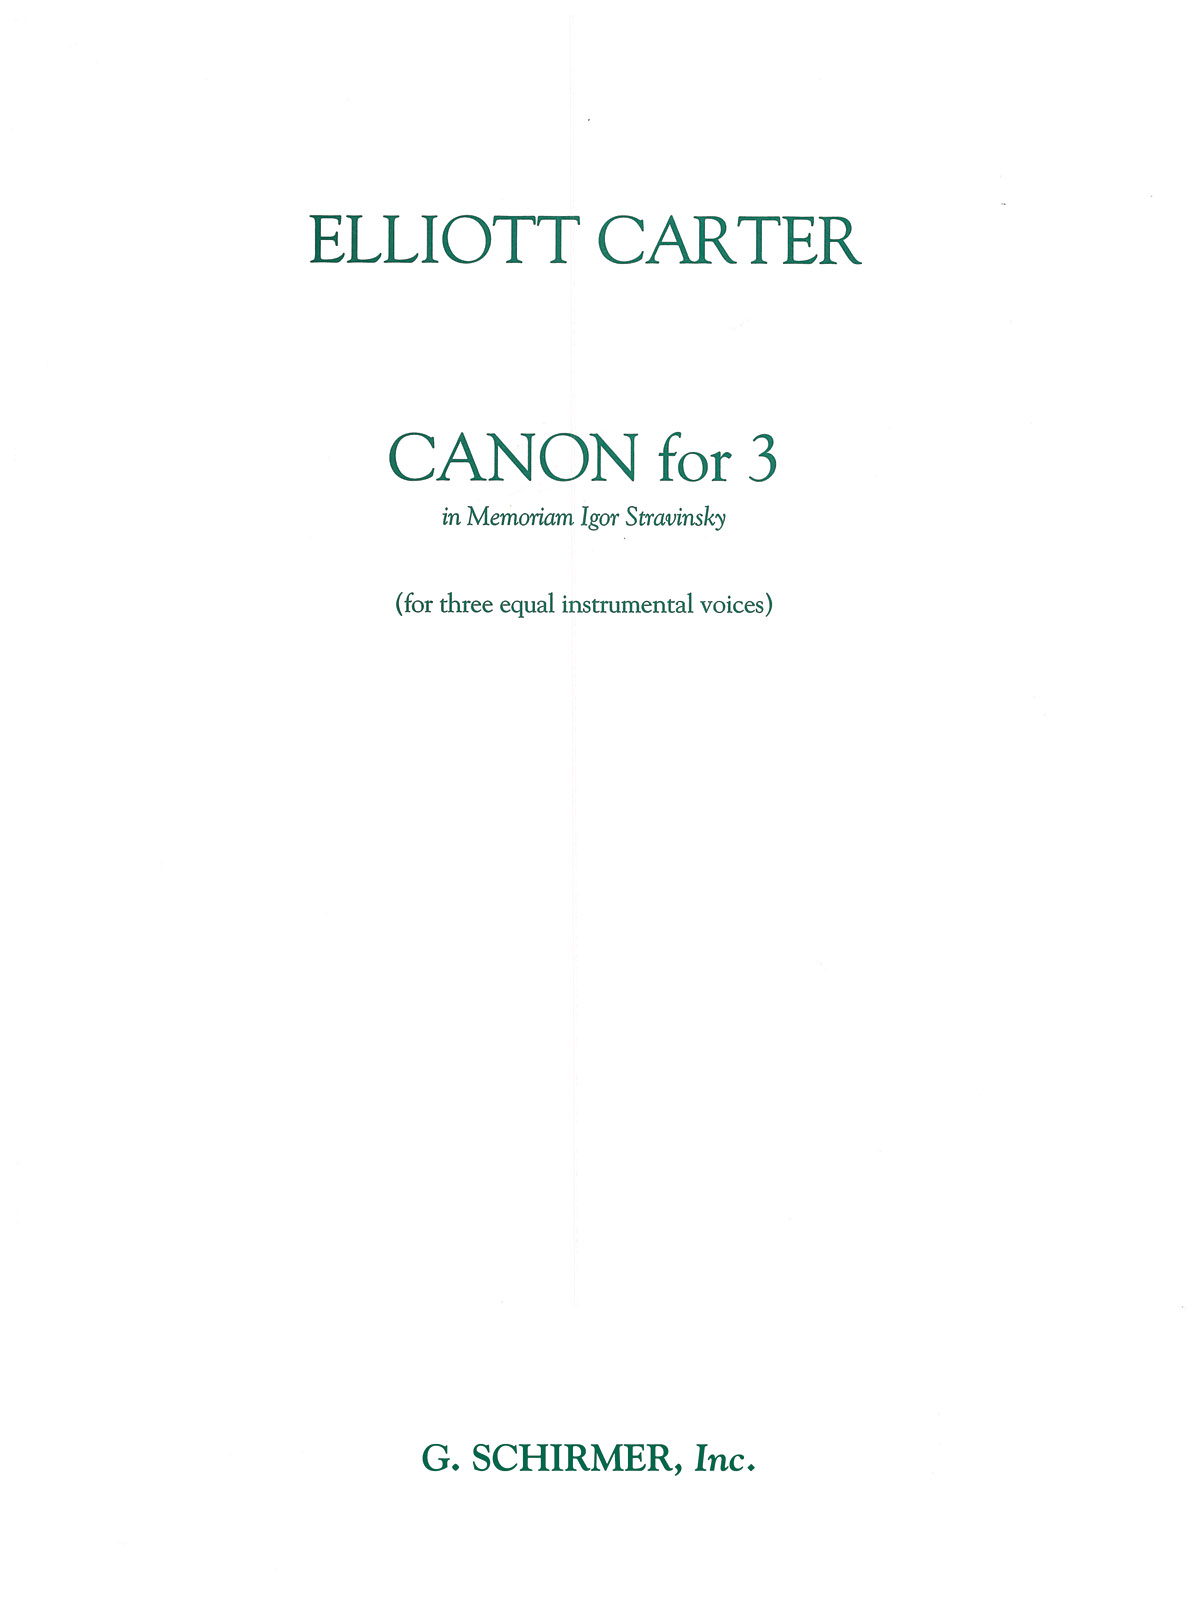 Elliott Carter: Canon for 3 - In Memoriam of Igor Stravinsky